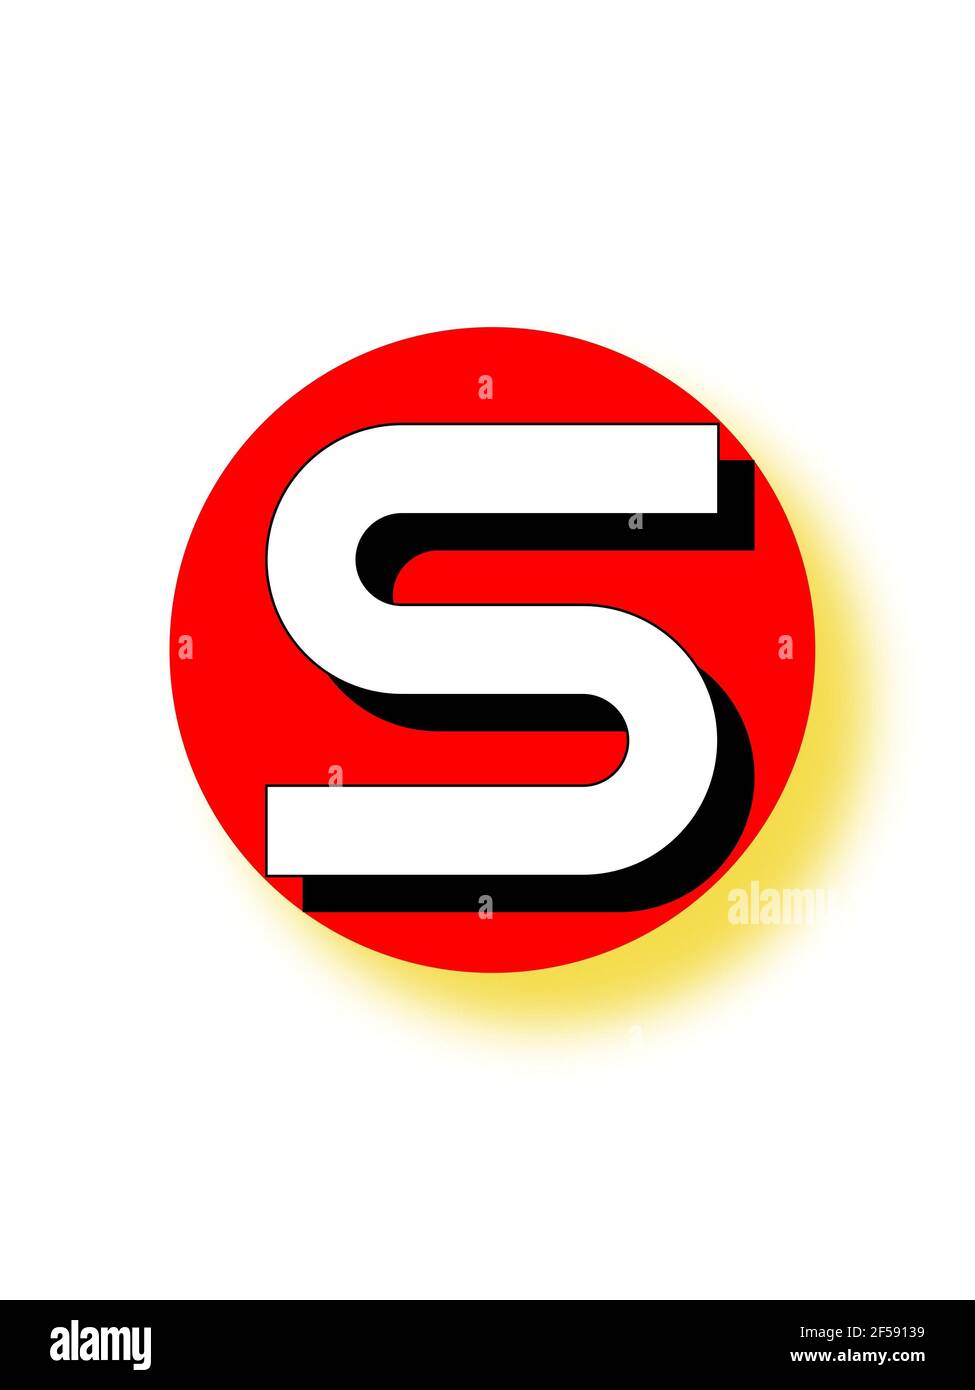 Illustrazione verticale di un logotipo con la lettera S su un cerchio rosso Foto Stock